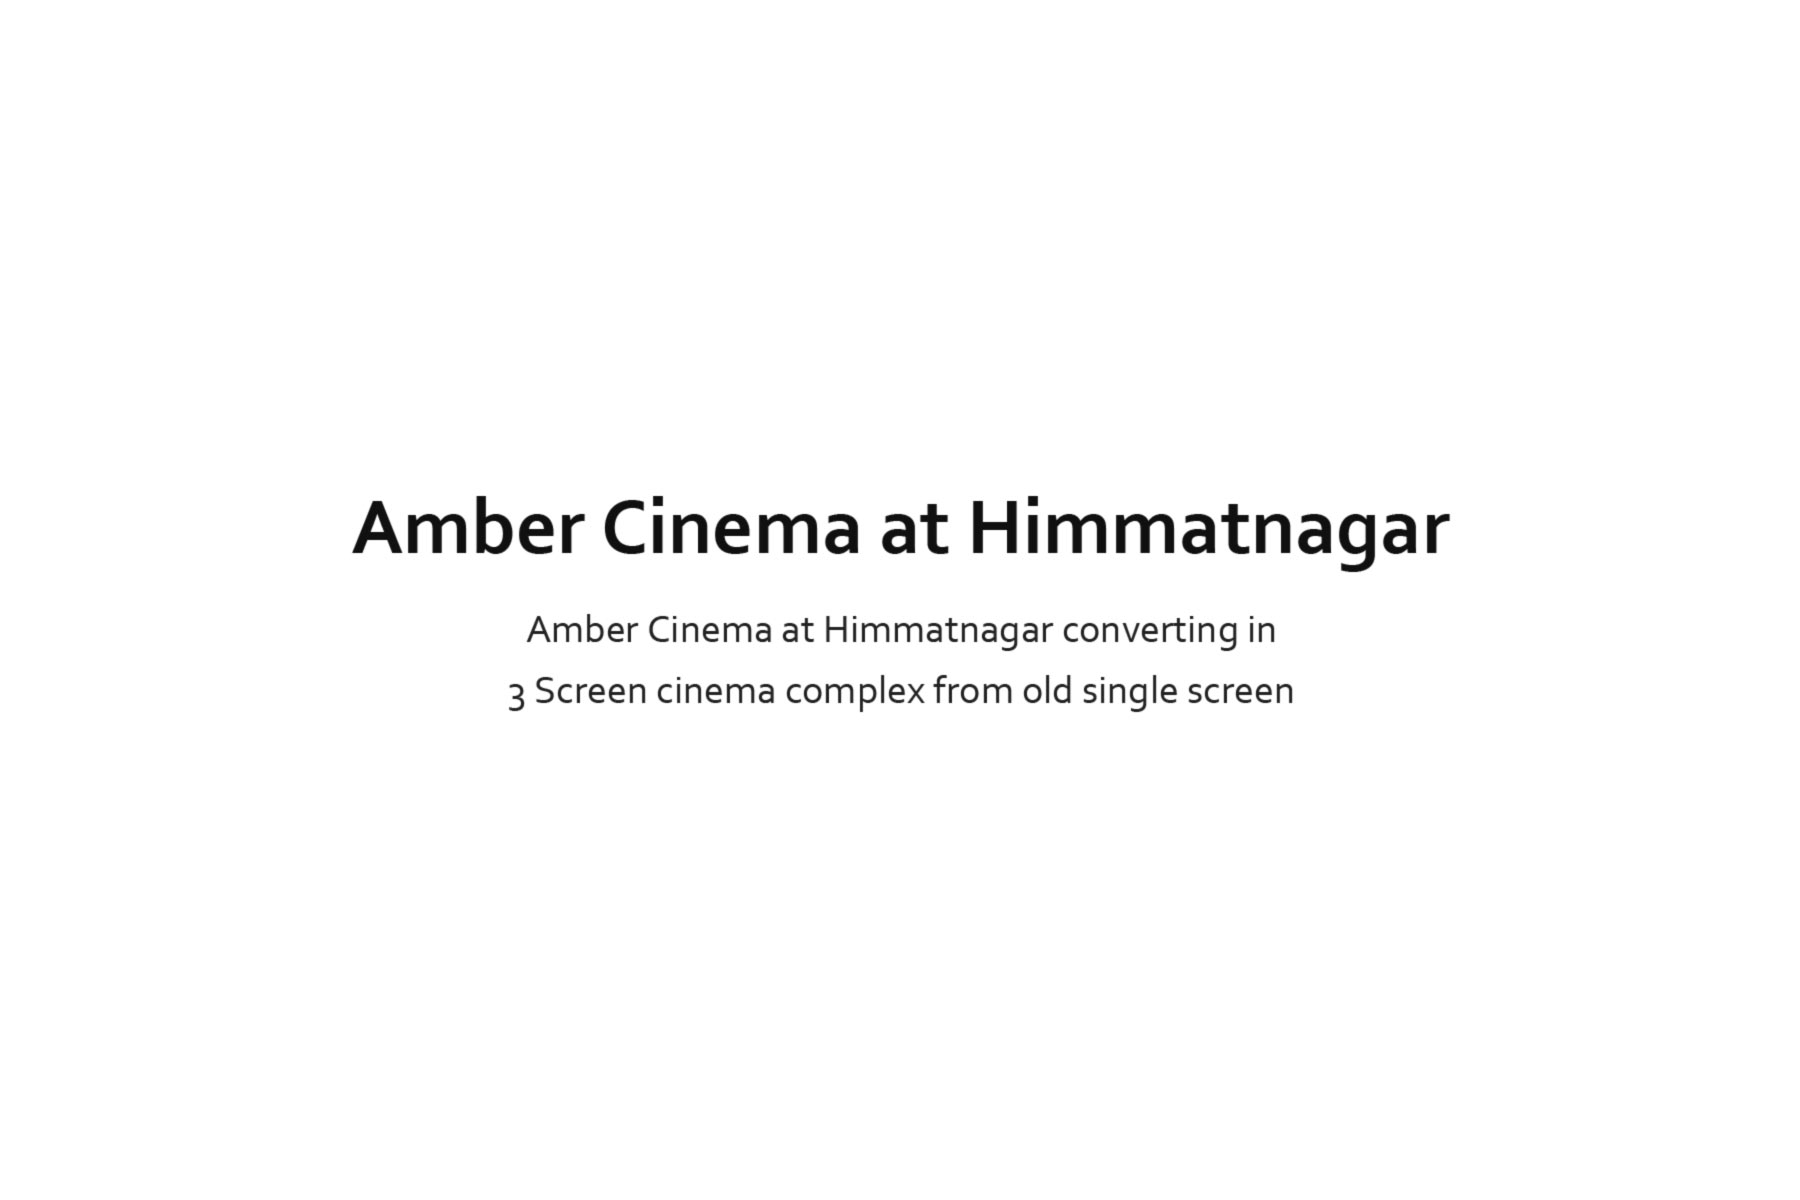 AMBER CINEMA AT HIMMATNAGAR